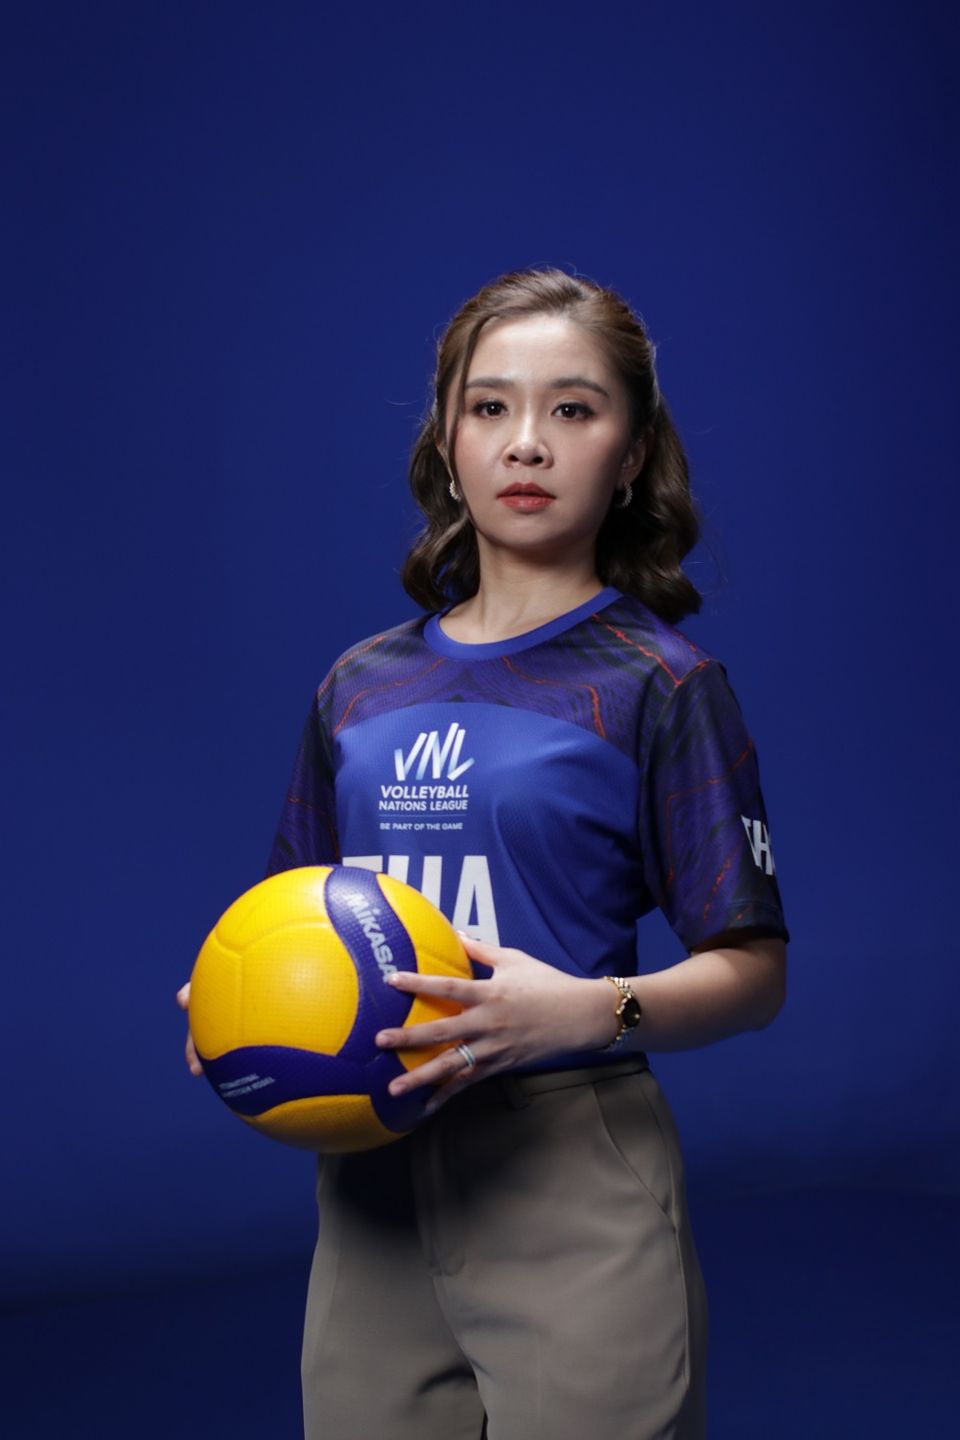 เชียร์ Volleyball Nations League 2023 ให้กระหึ่มโลก ช่อง 7HD - เทโรฯ ชวนเอฟซีสวมเสื้อทีมโปรด